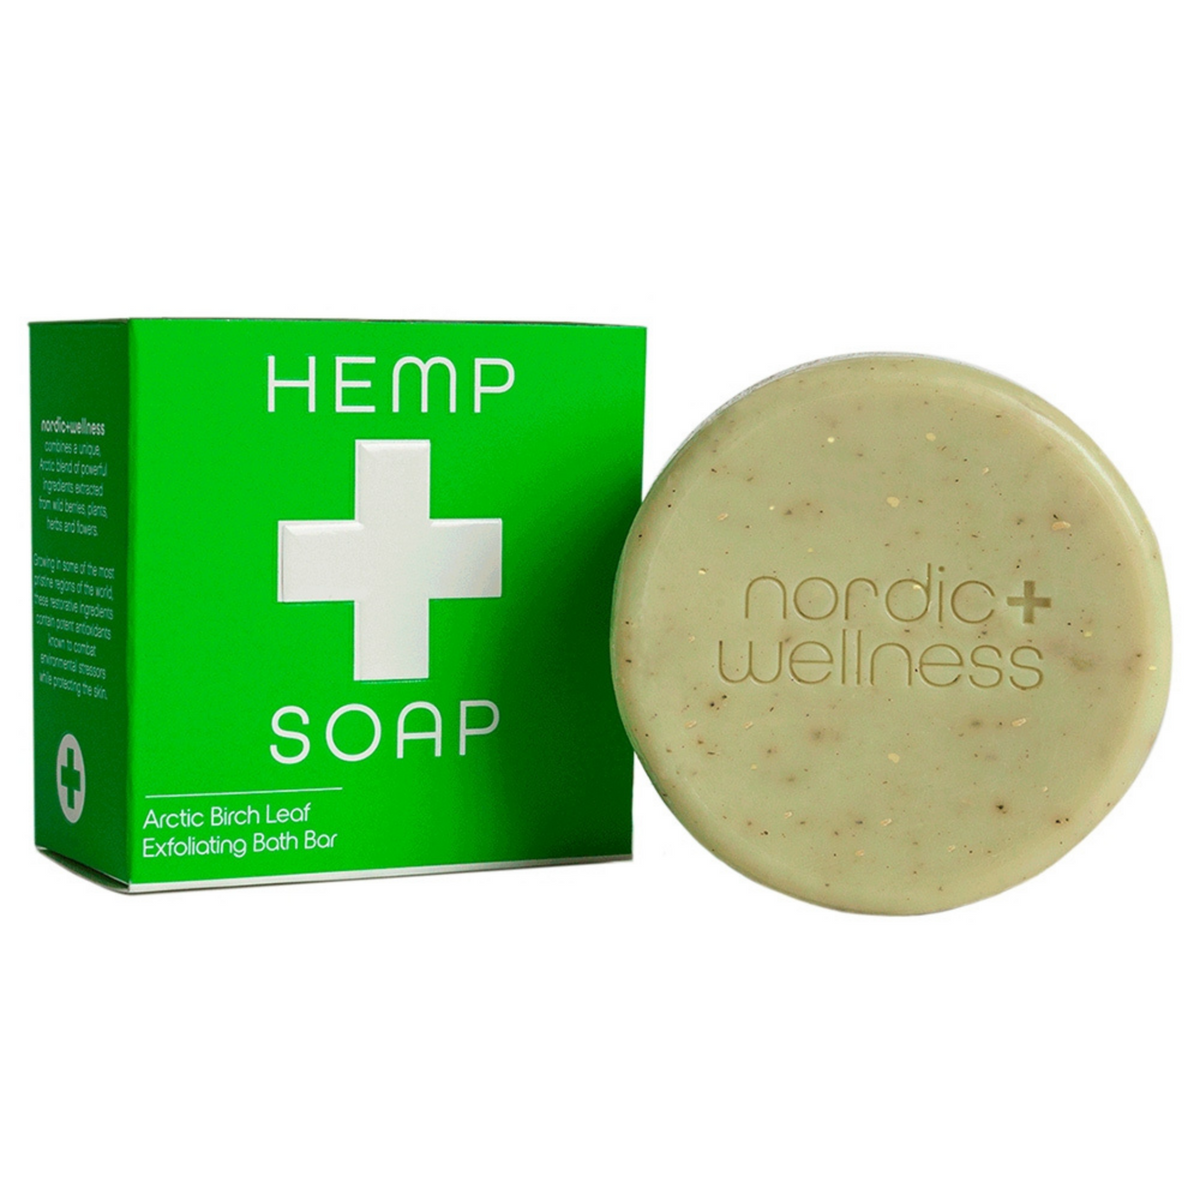 Primary Image of Hemp Soap